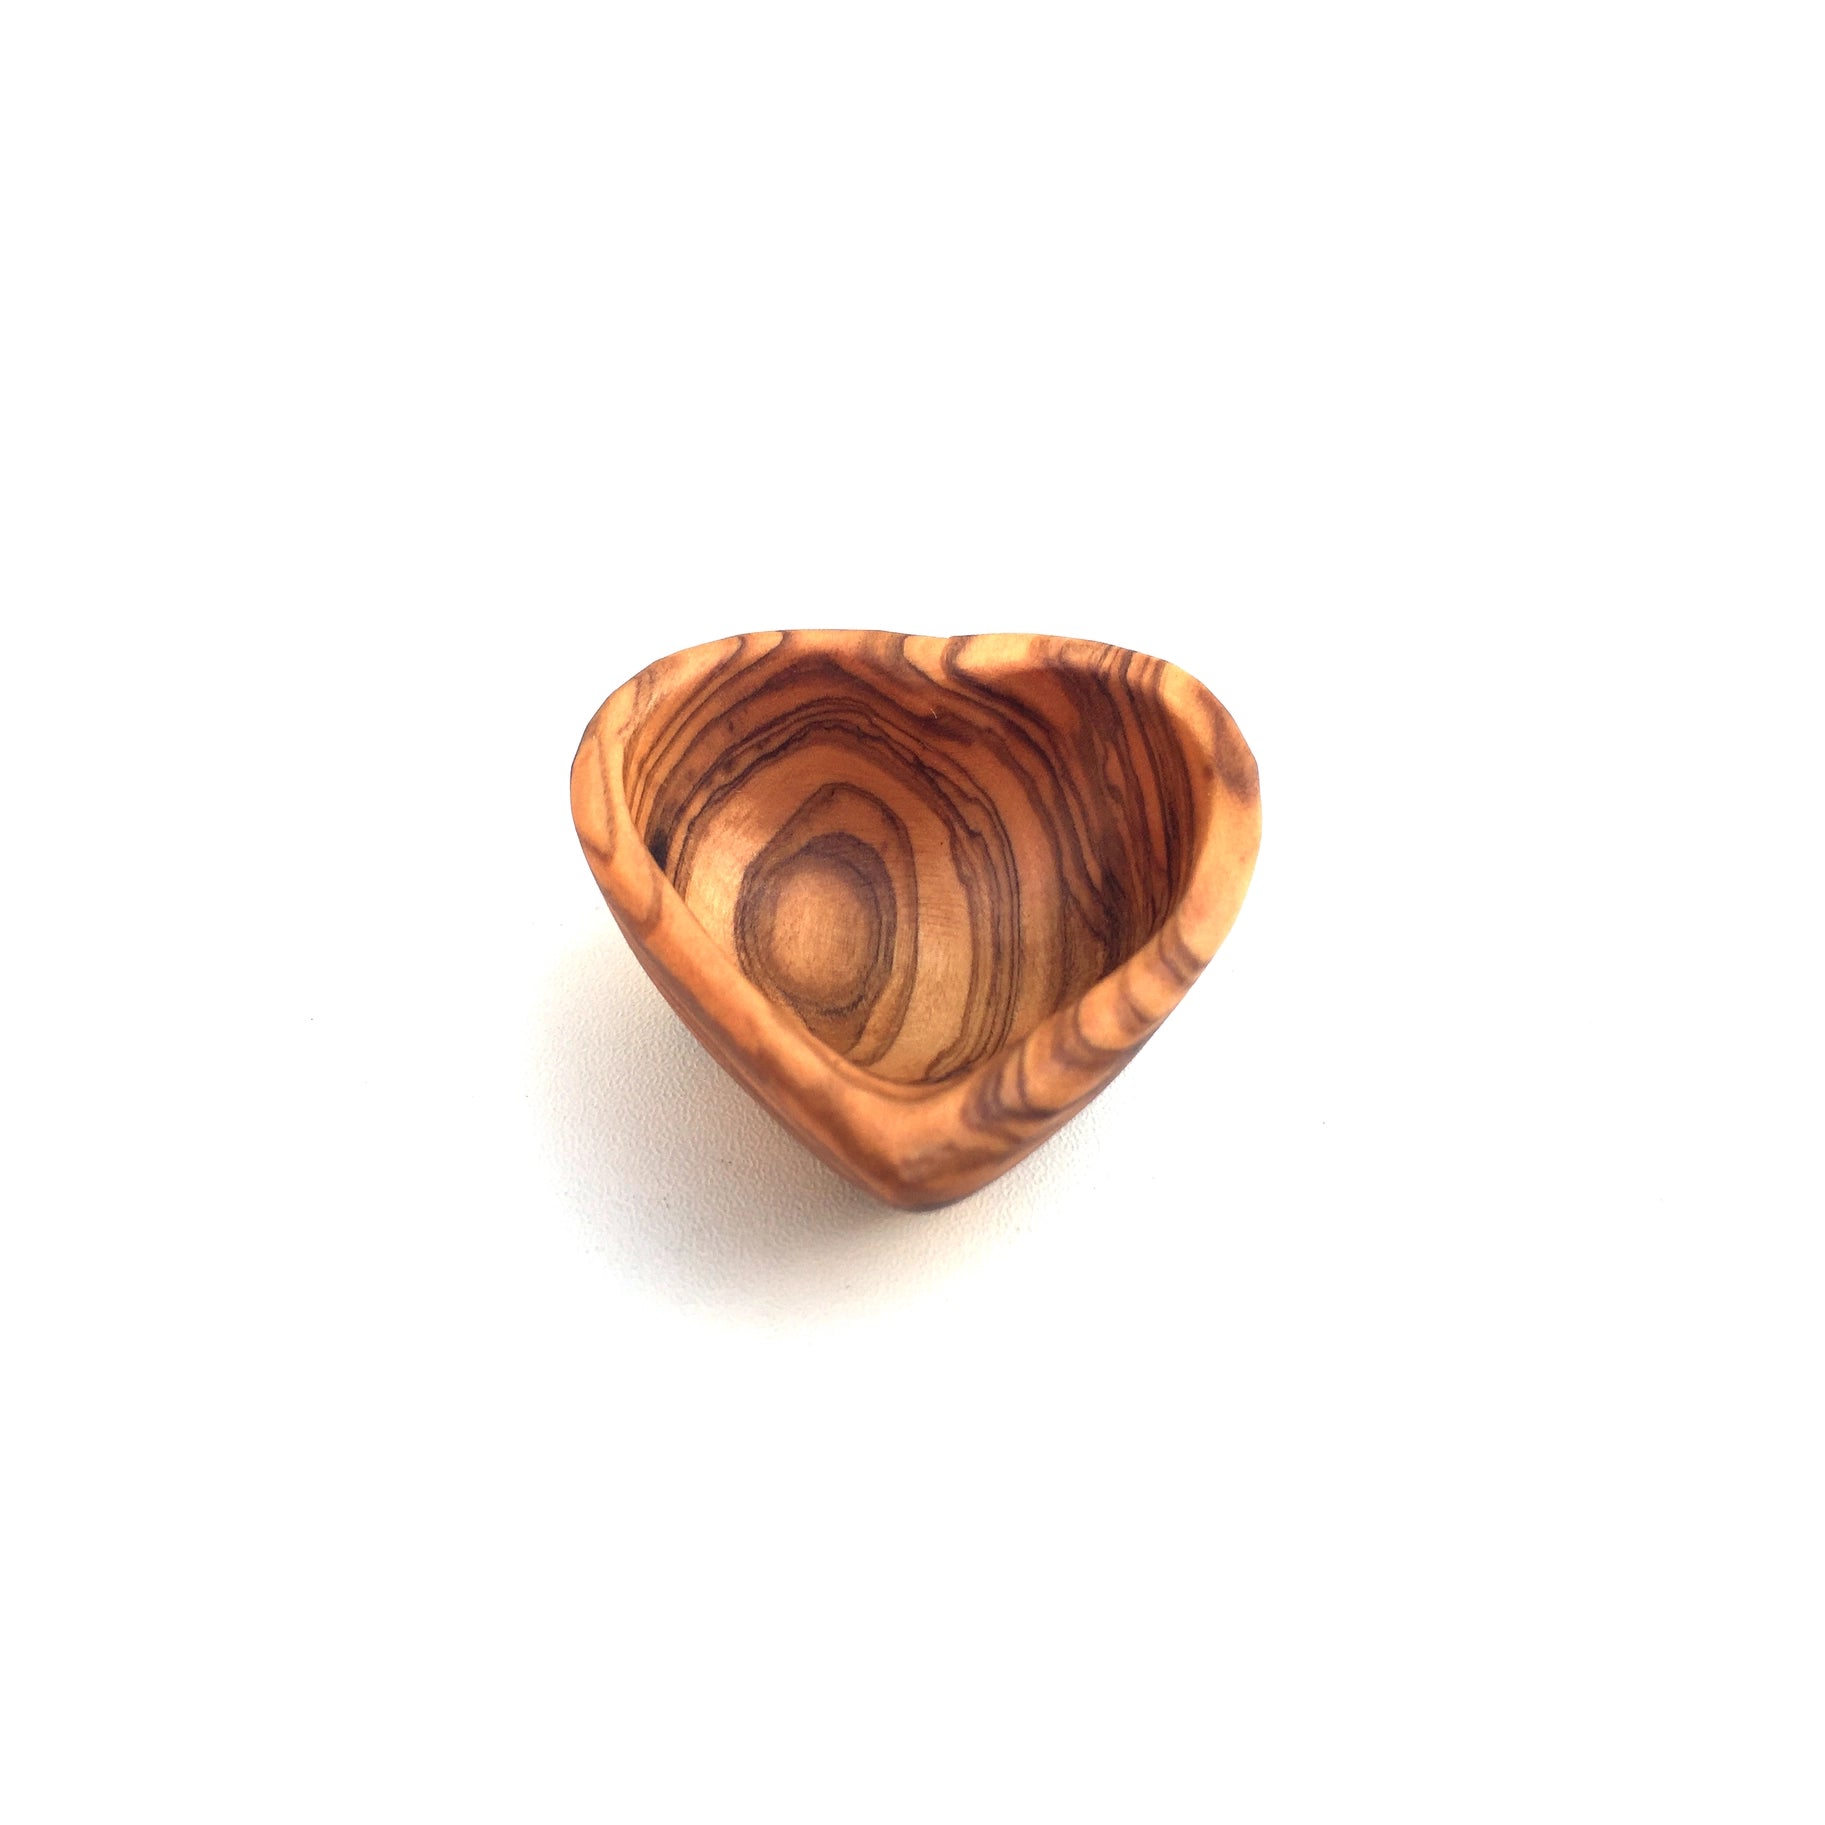 Tiny Heart Bowl